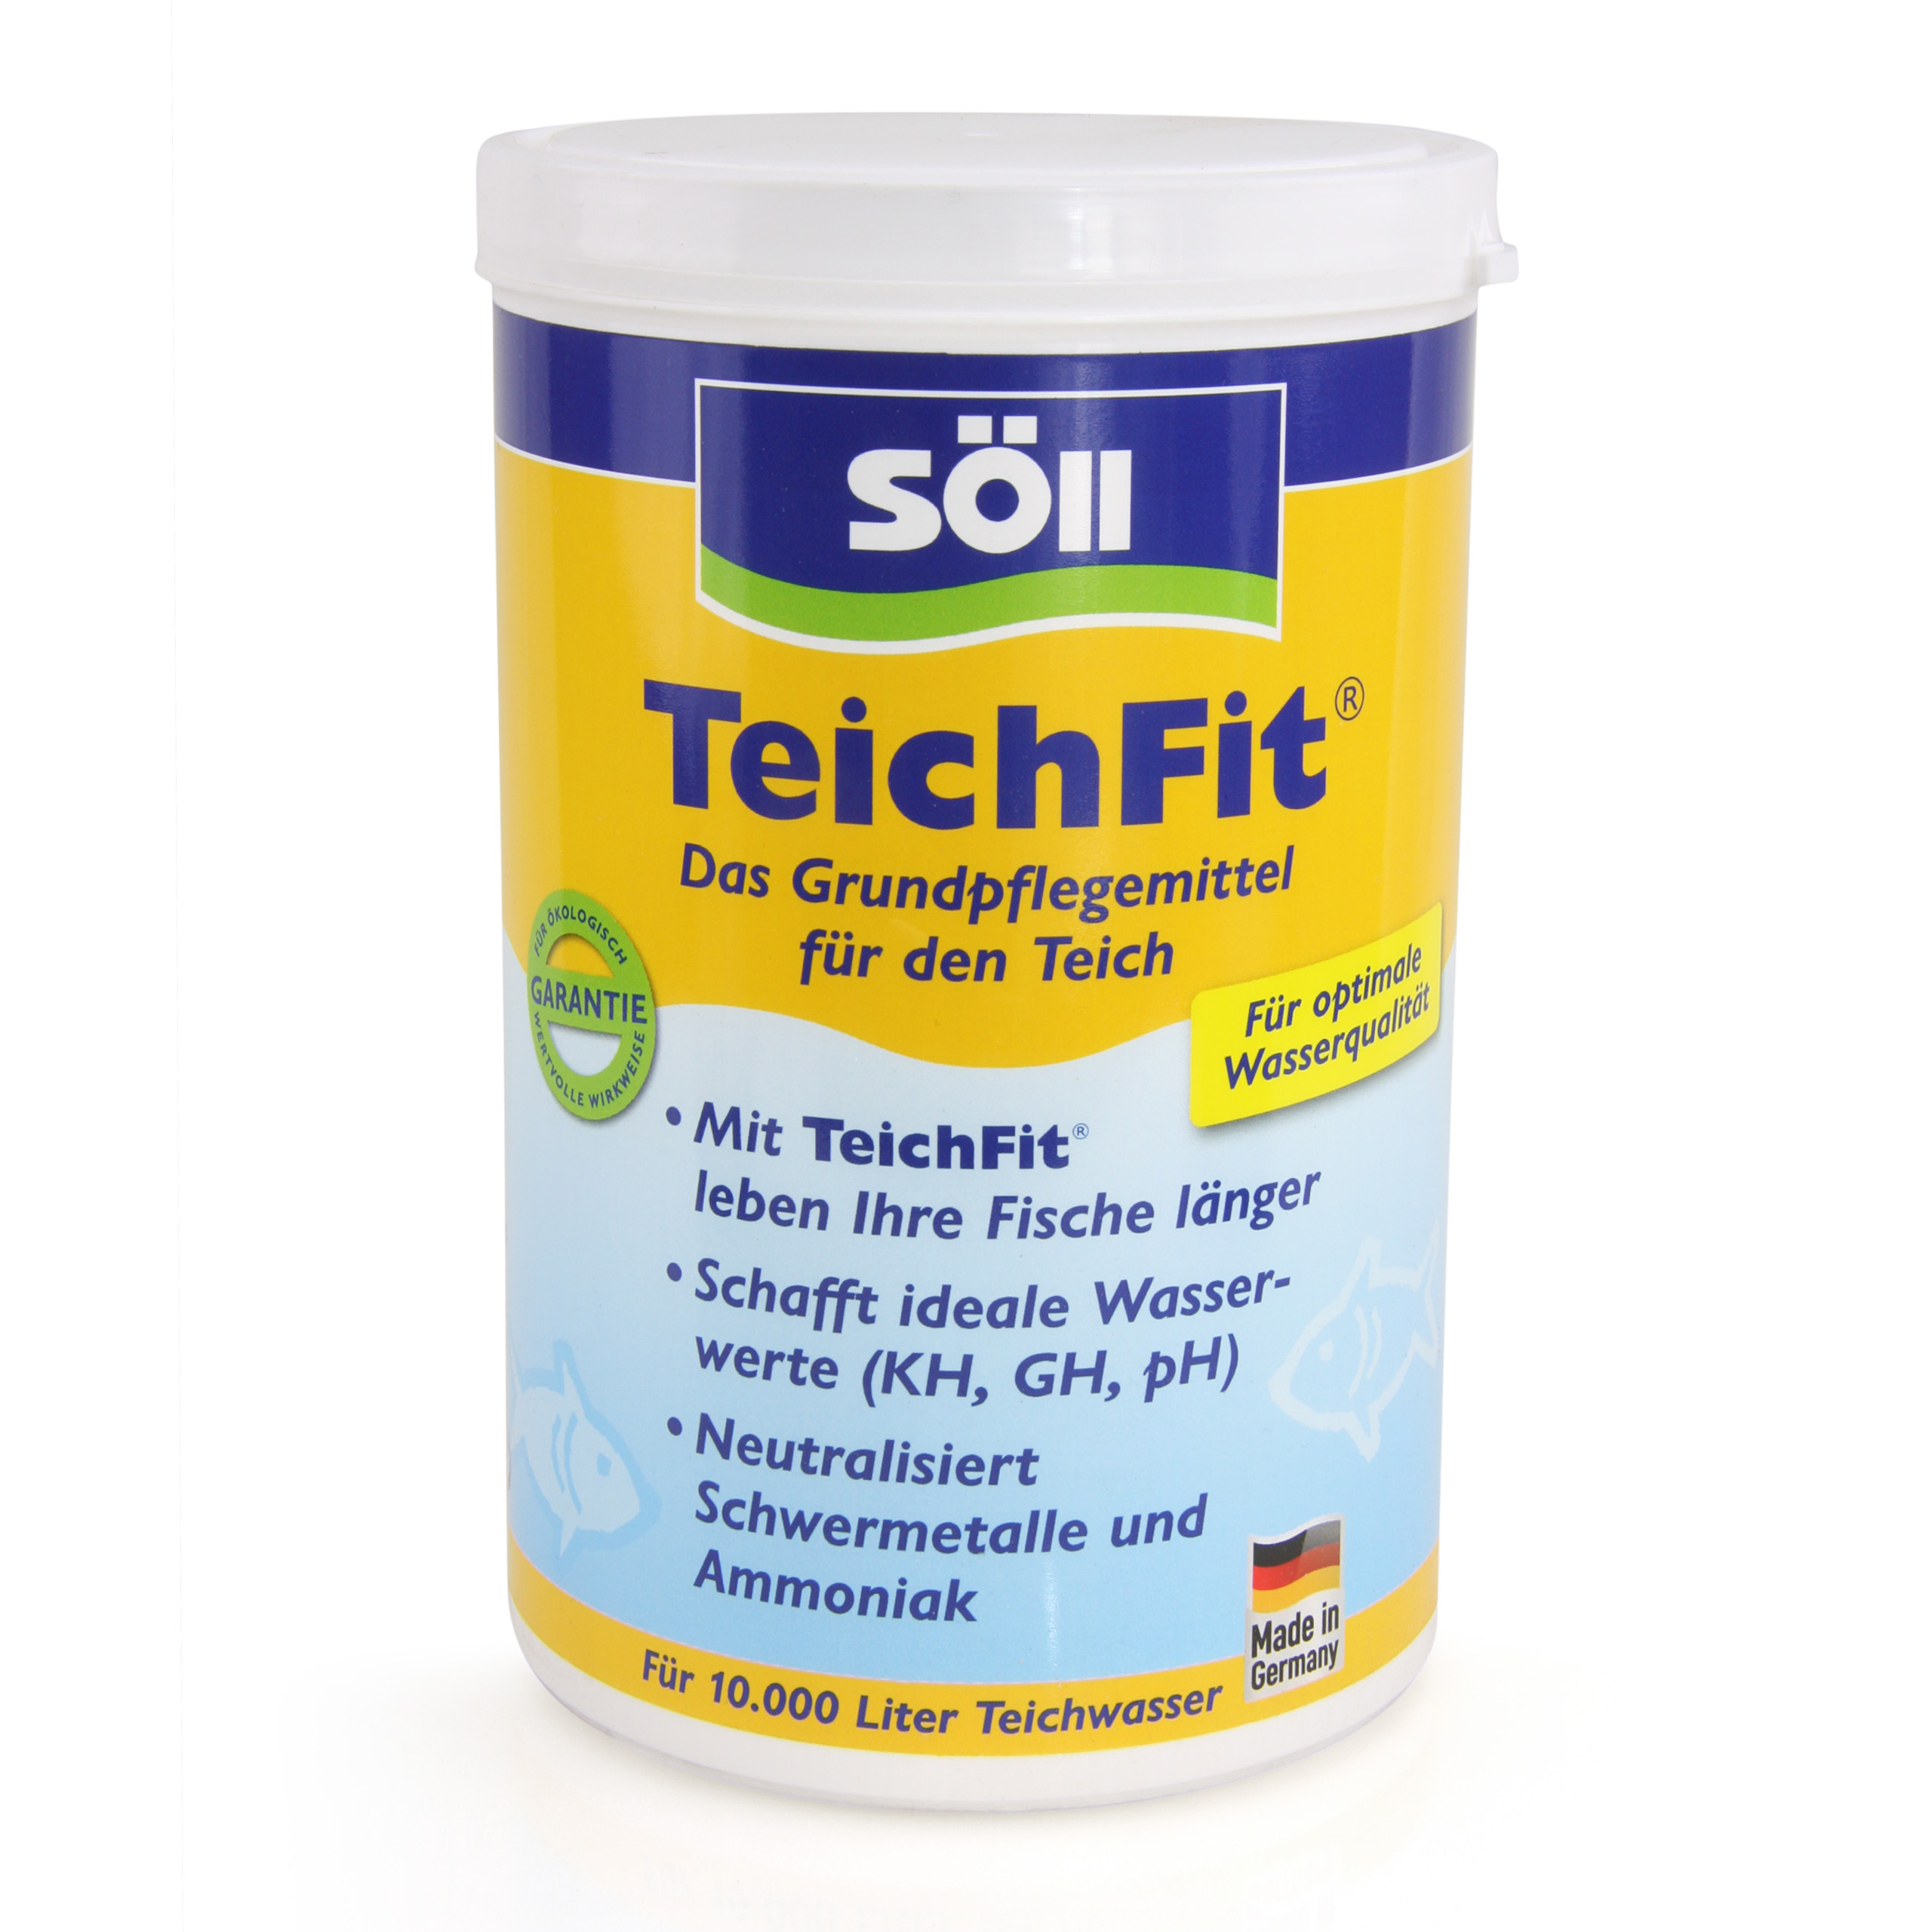 1 kg TeichFit® Grundpflegemittel